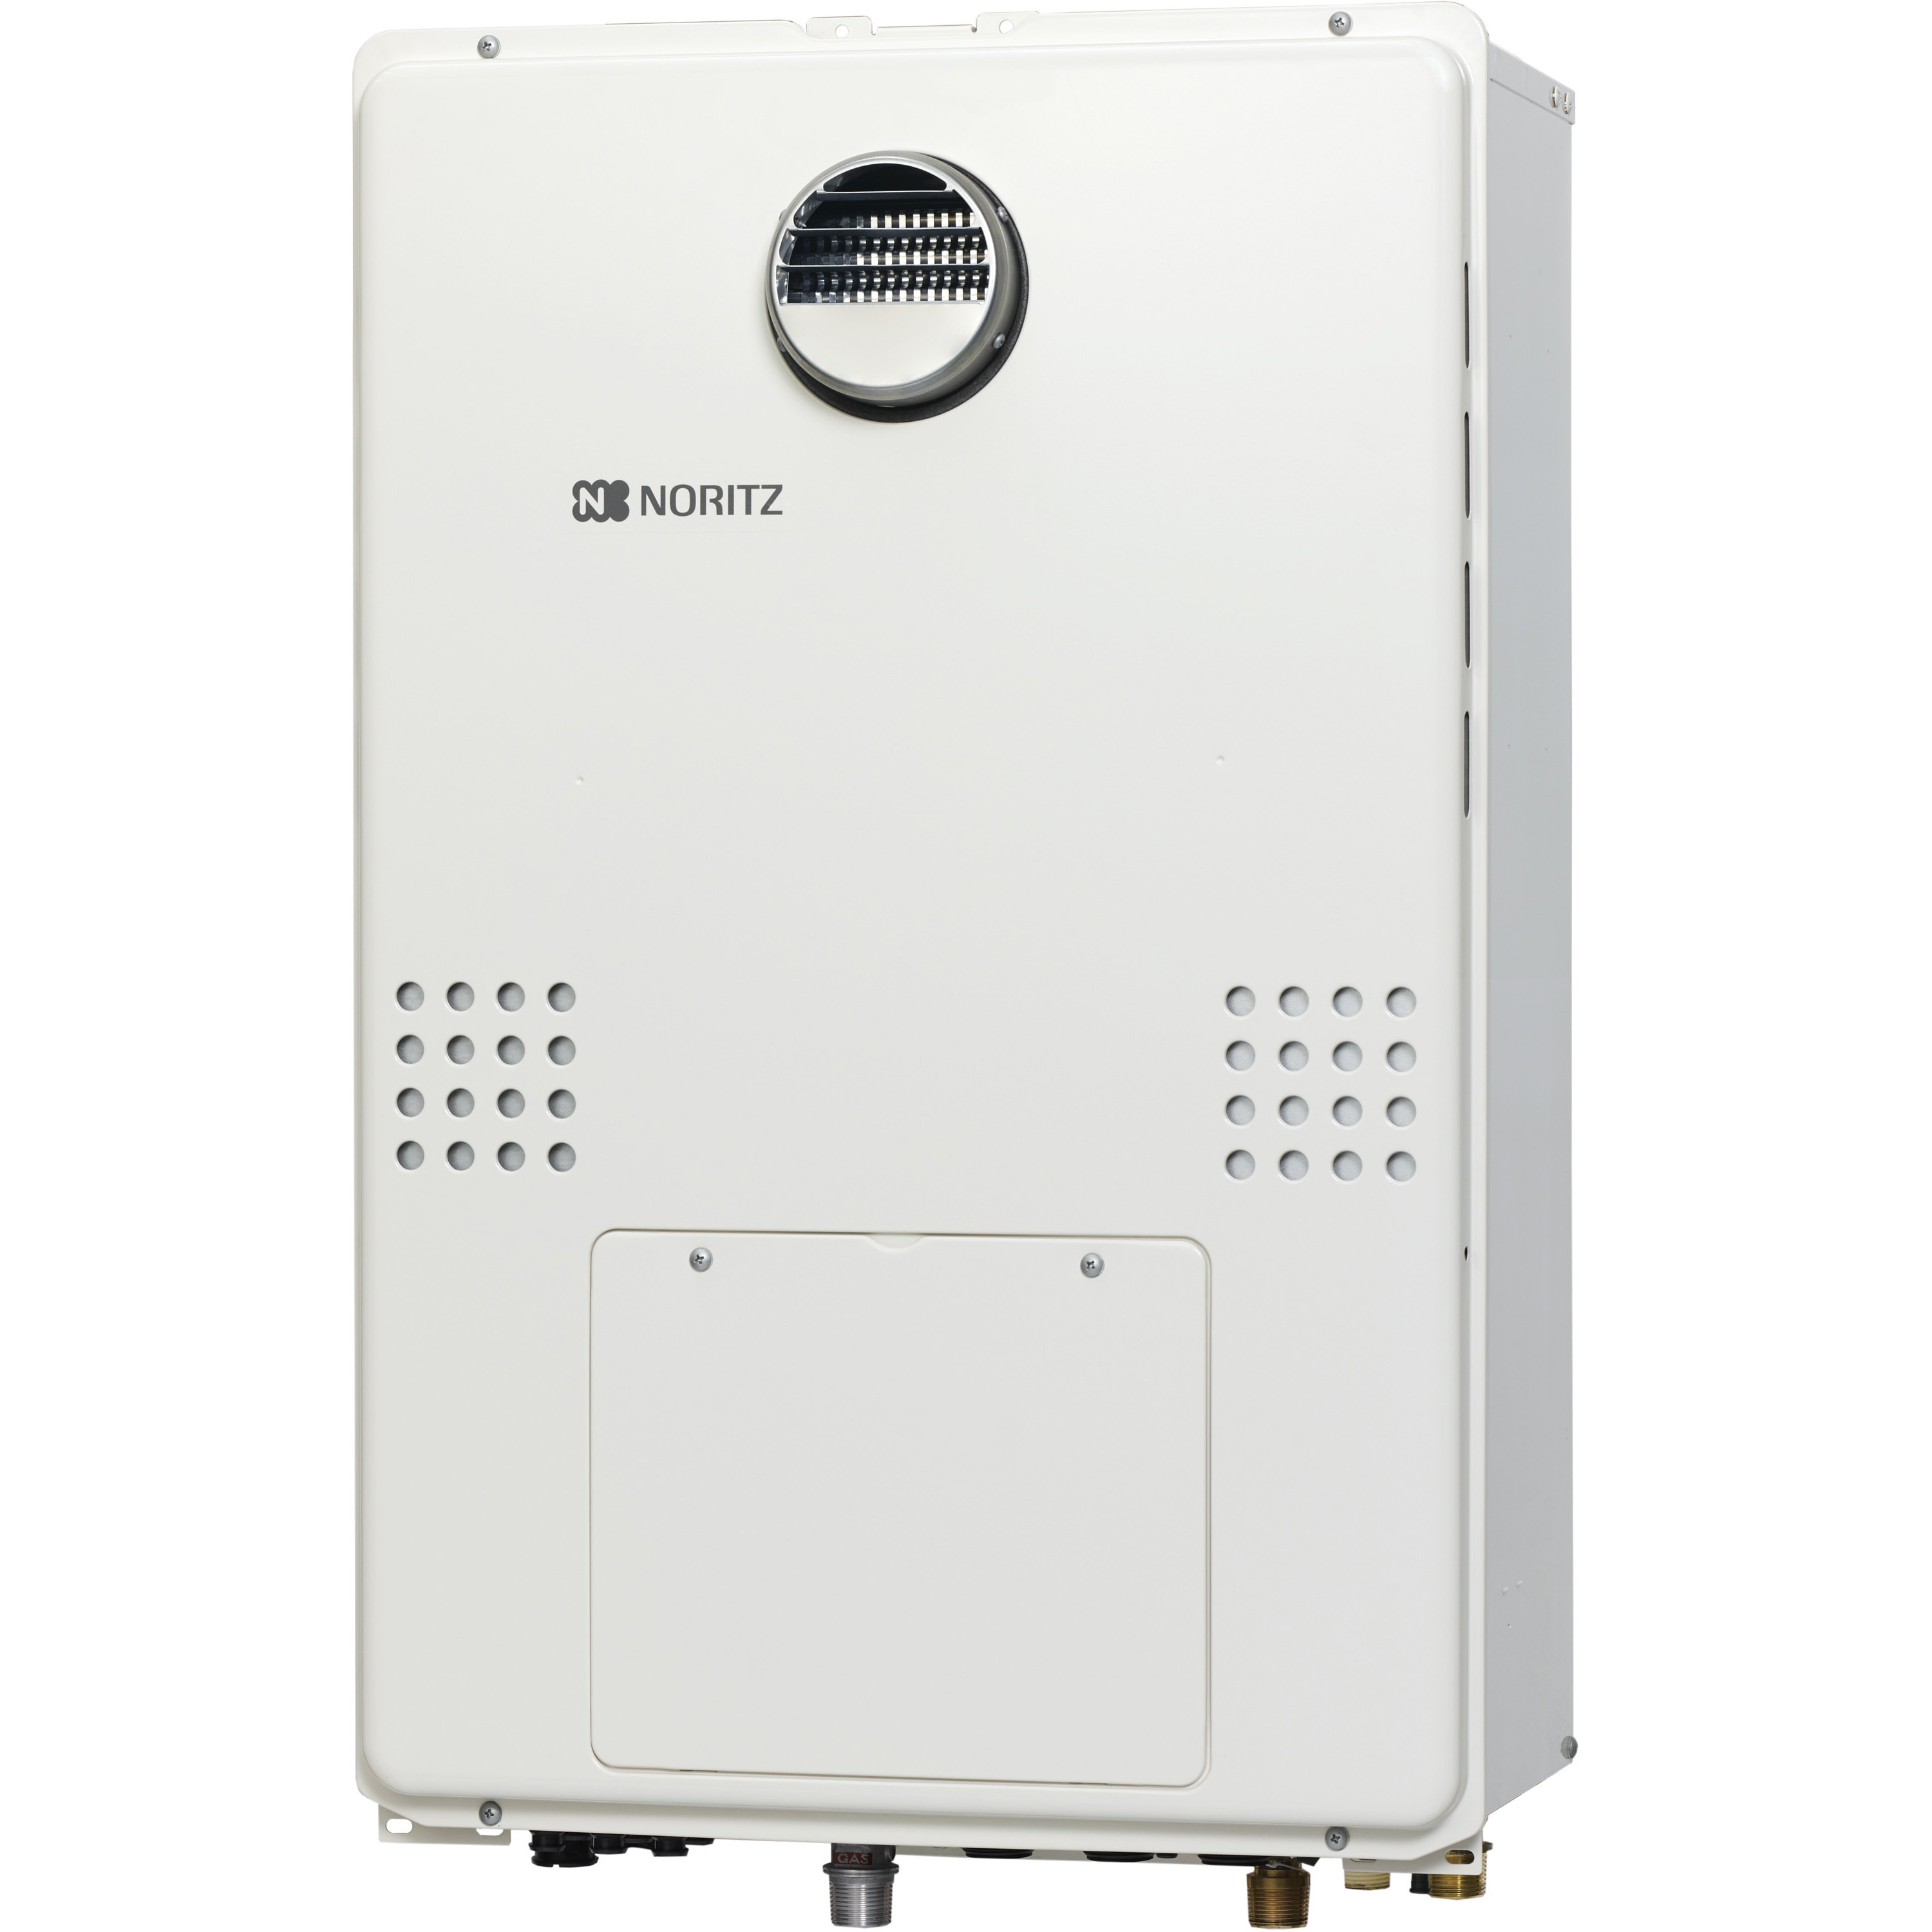 GTH-C2461SAW3H-1 BL 高効率ガス温水暖房付ふろ給湯器(オート) 屋外 